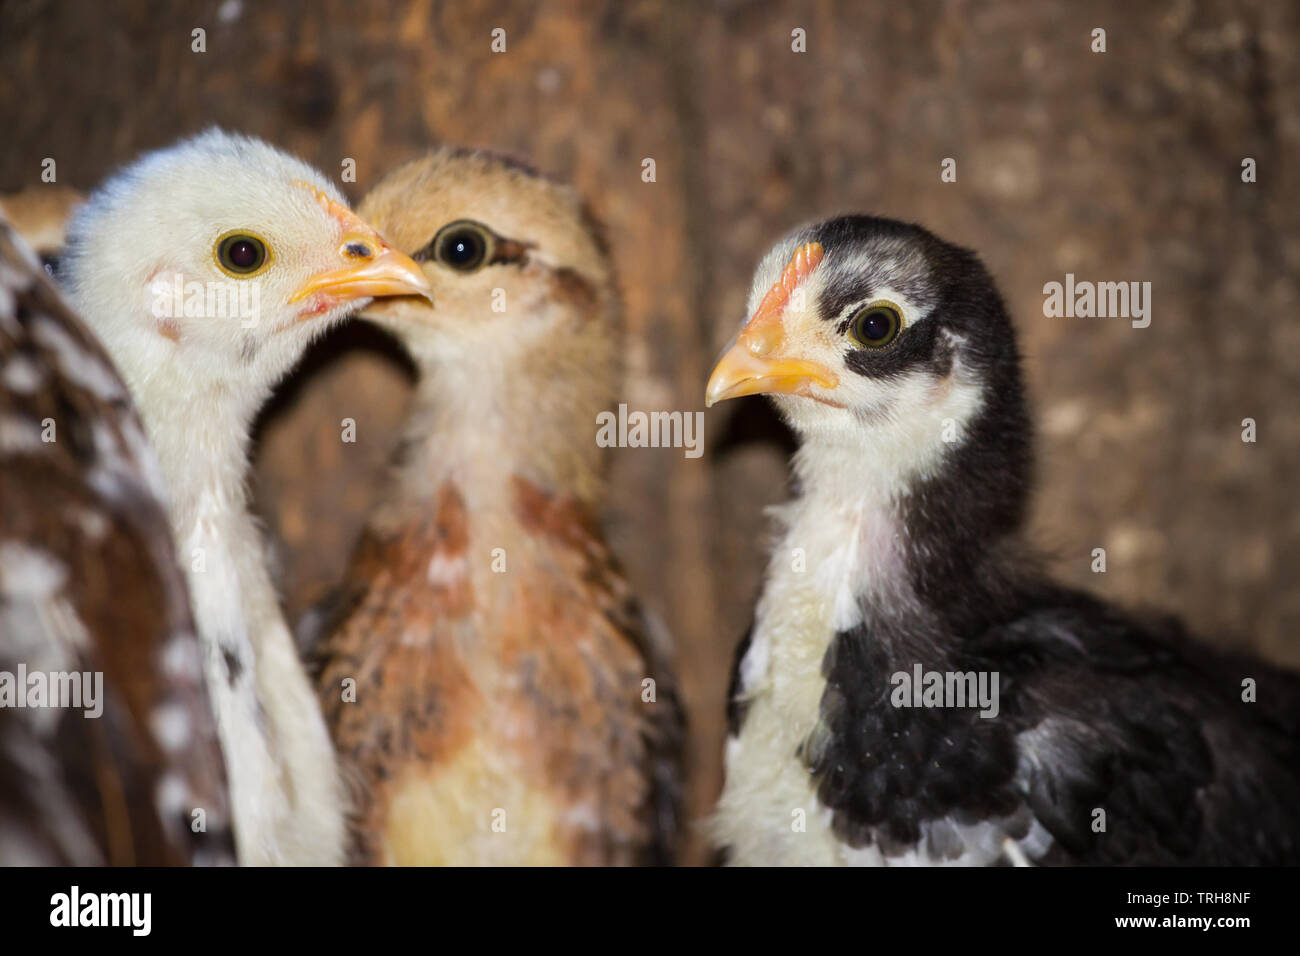 Drei flügge der Rasse Stoapiperl/Steinhendl, einer vom Aussterben bedrohten Rasse Huhn aus Österreich, im Stall Stockfoto